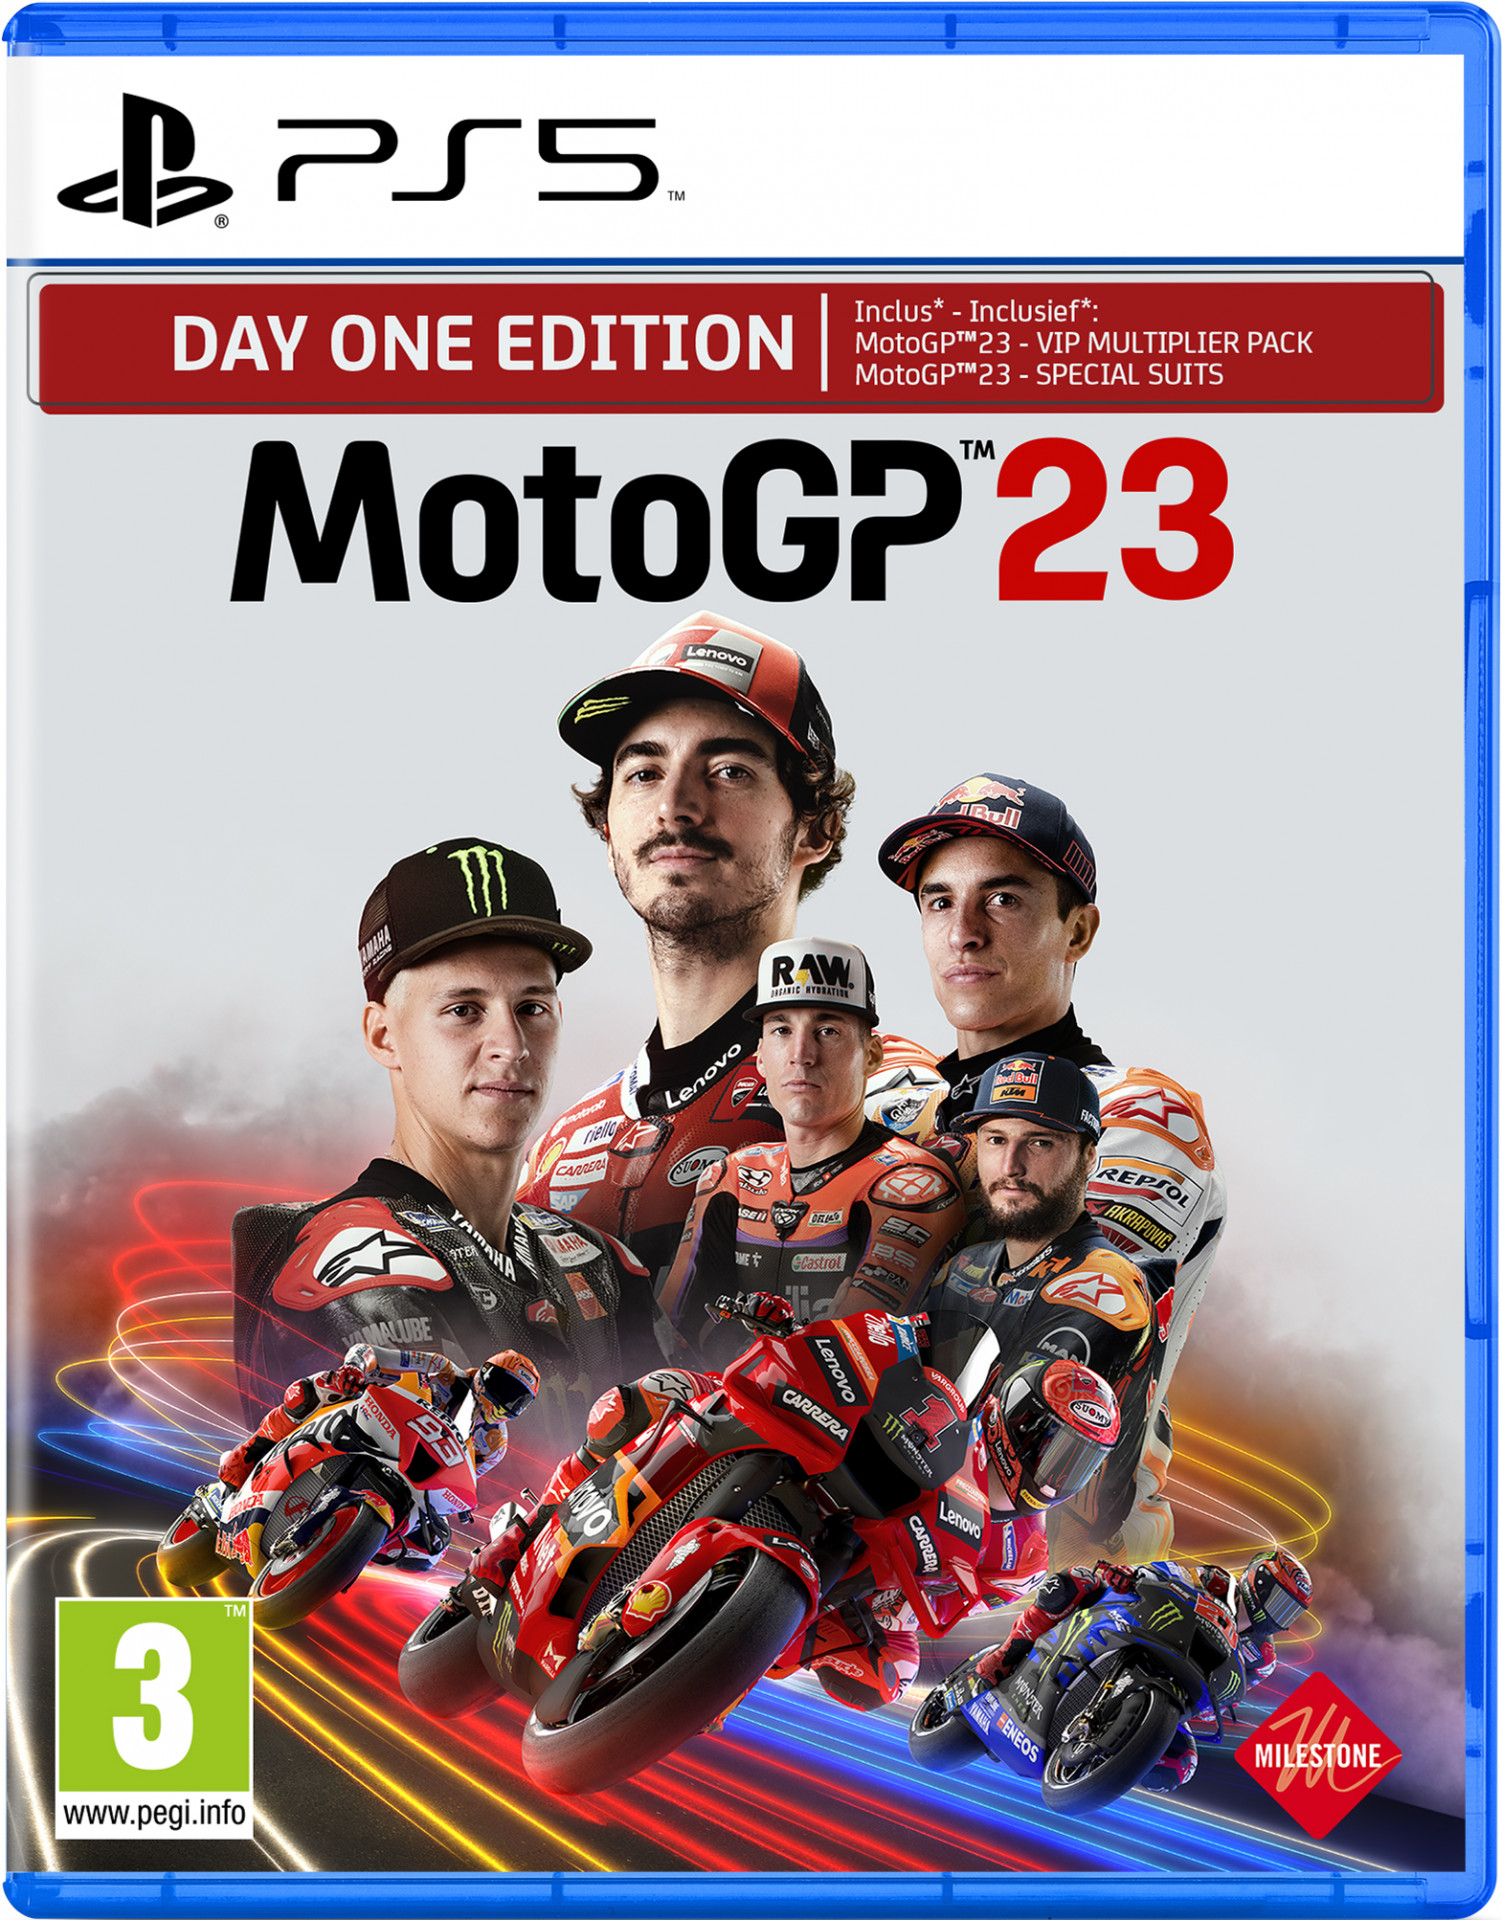 MotoGP 23 (PS5), Milestone